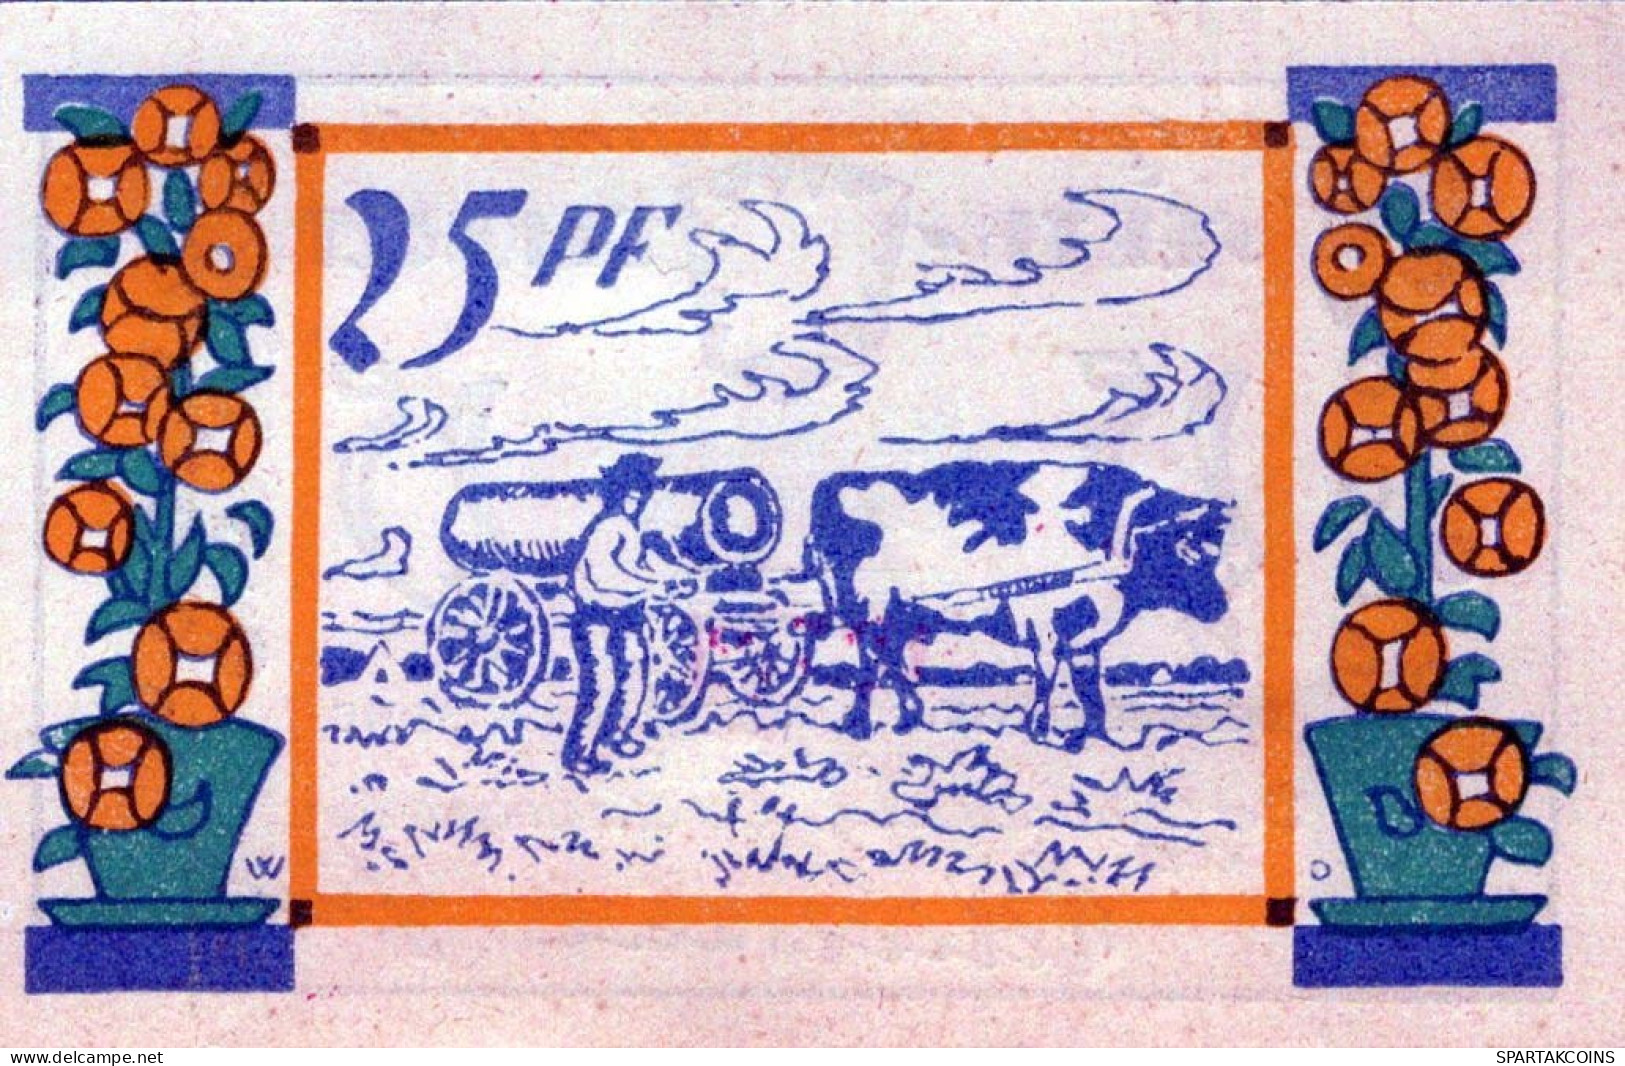 25 PFENNIG 1921 Stadt SEETH-EKHOLT Schleswig-Holstein DEUTSCHLAND Notgeld #PF469 - [11] Local Banknote Issues